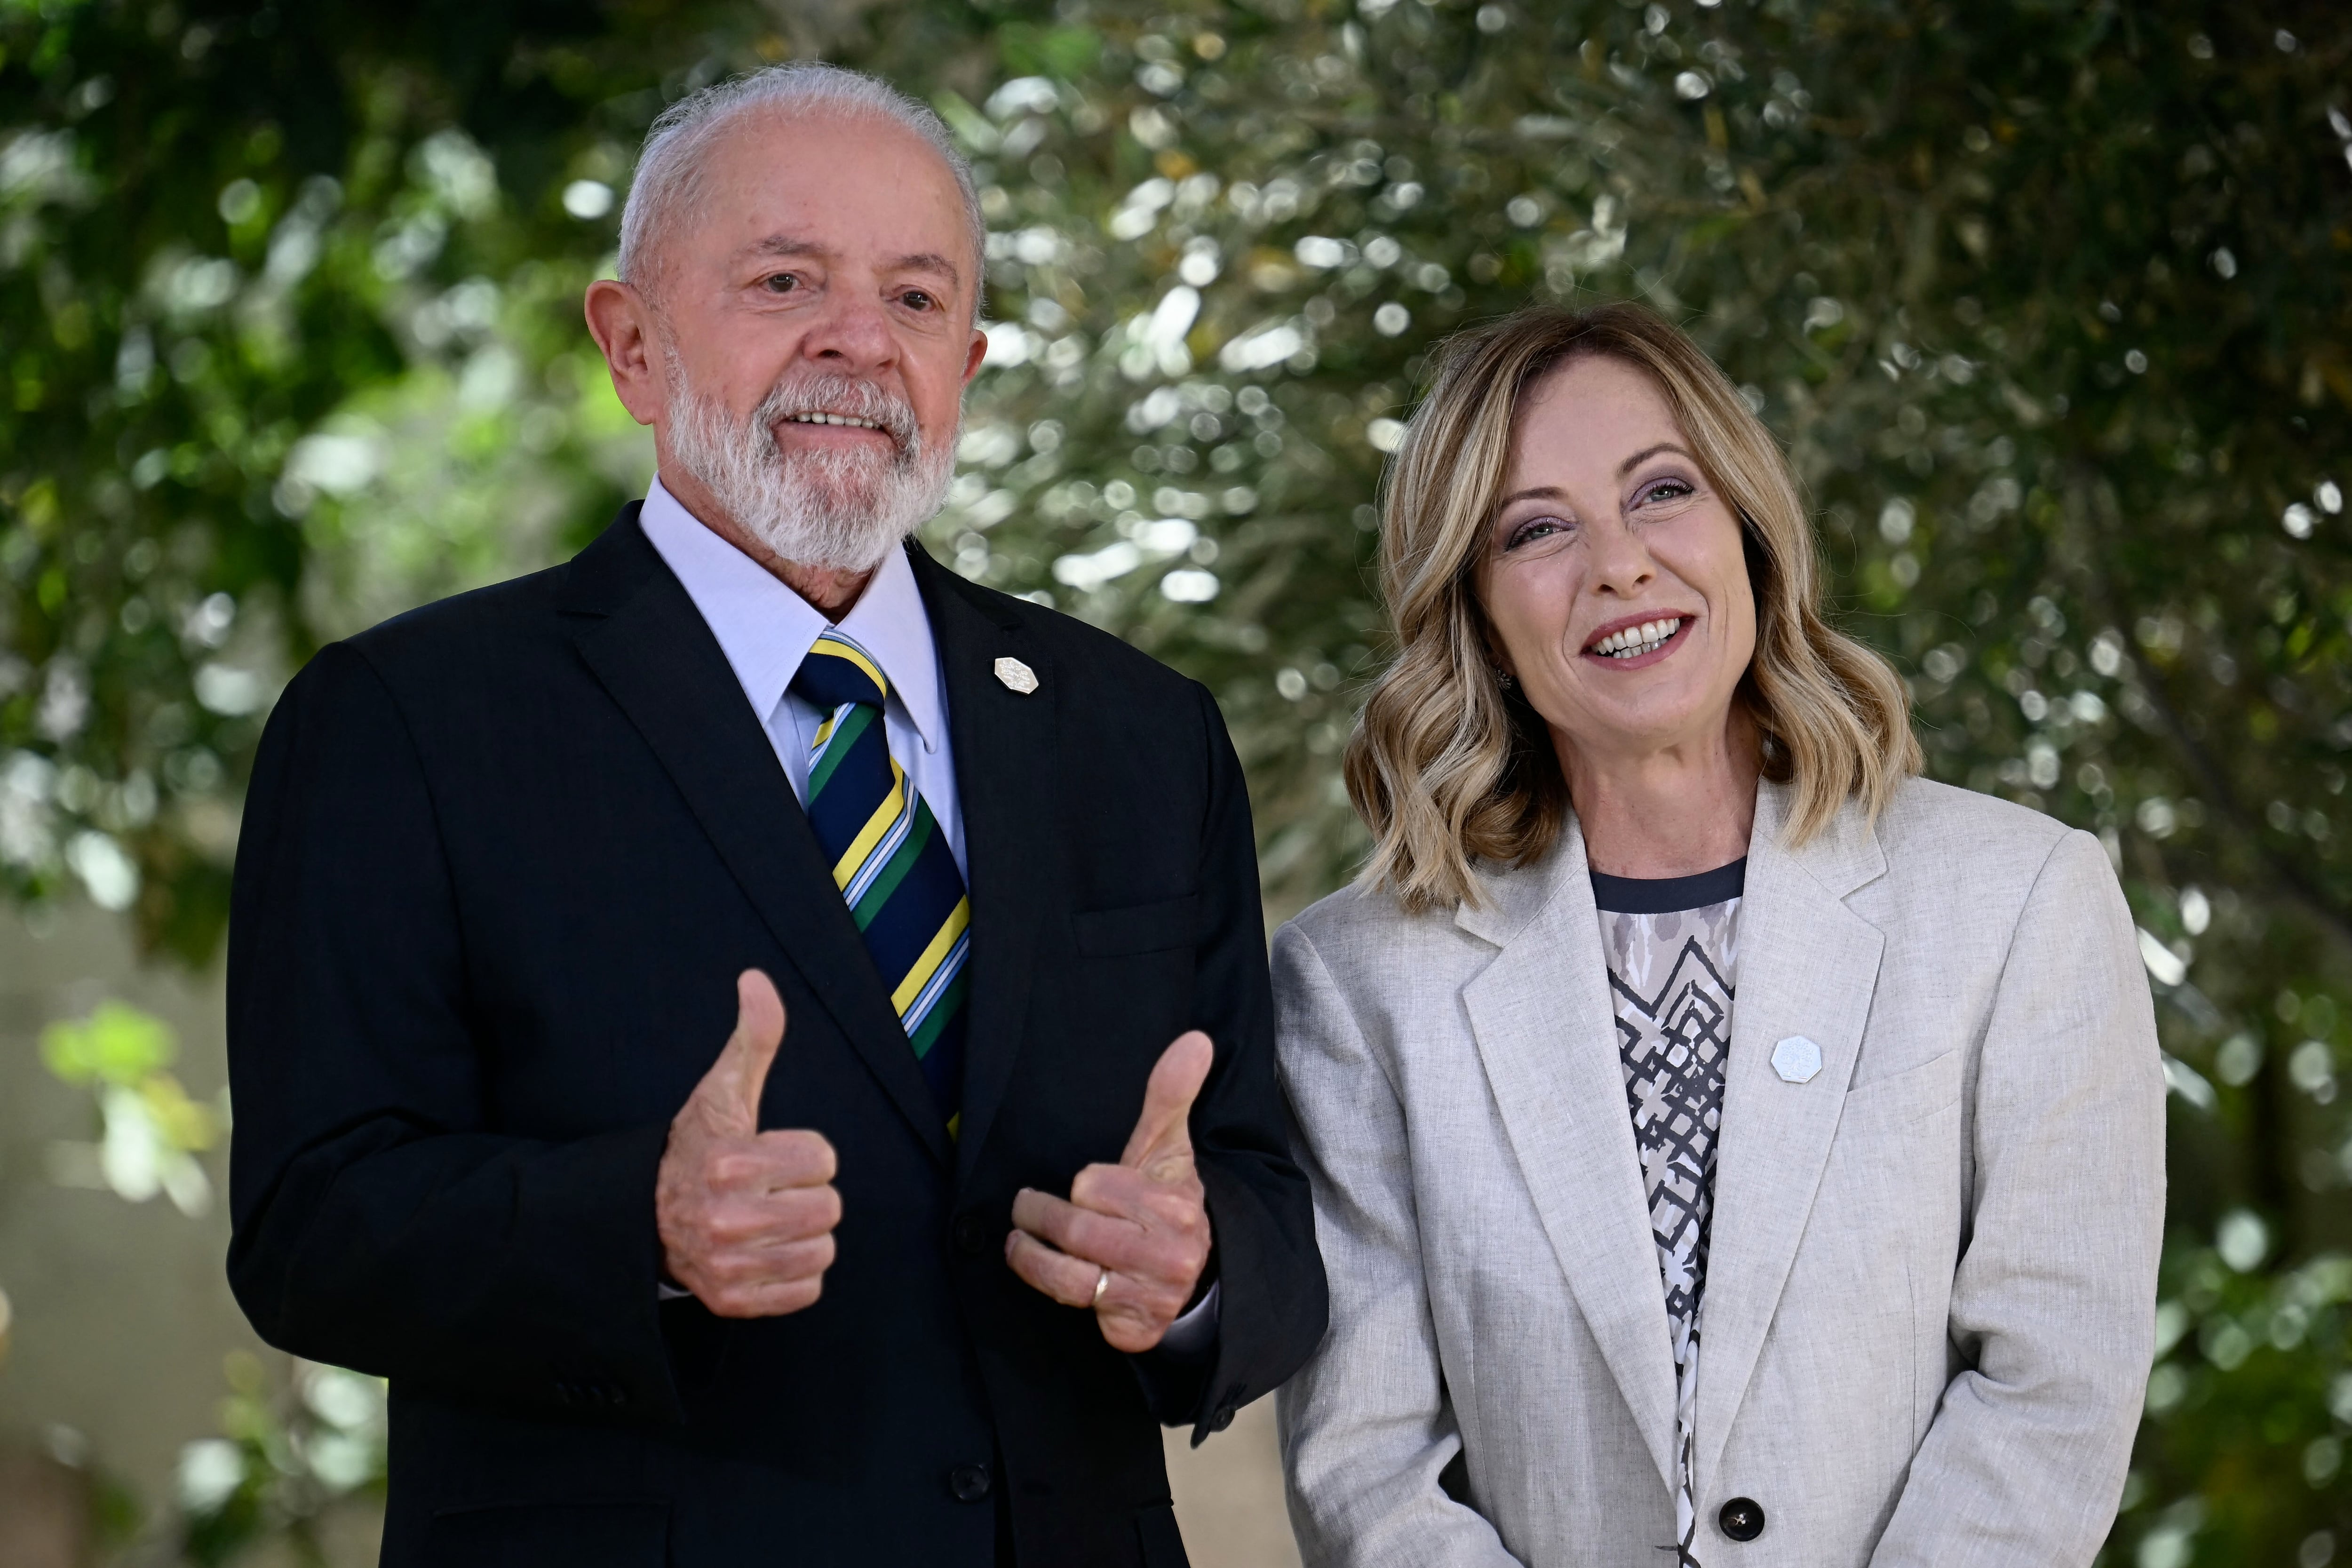 El presidente de Brasil Luiz Inacio Lula da Silva, aseguró que su país está listo a firmar el acuerdo comercial con la Unión Europea. En la fotografía le acompaña Giorgia Meloni, primera ministra de Italia, durante la reunión del G7.